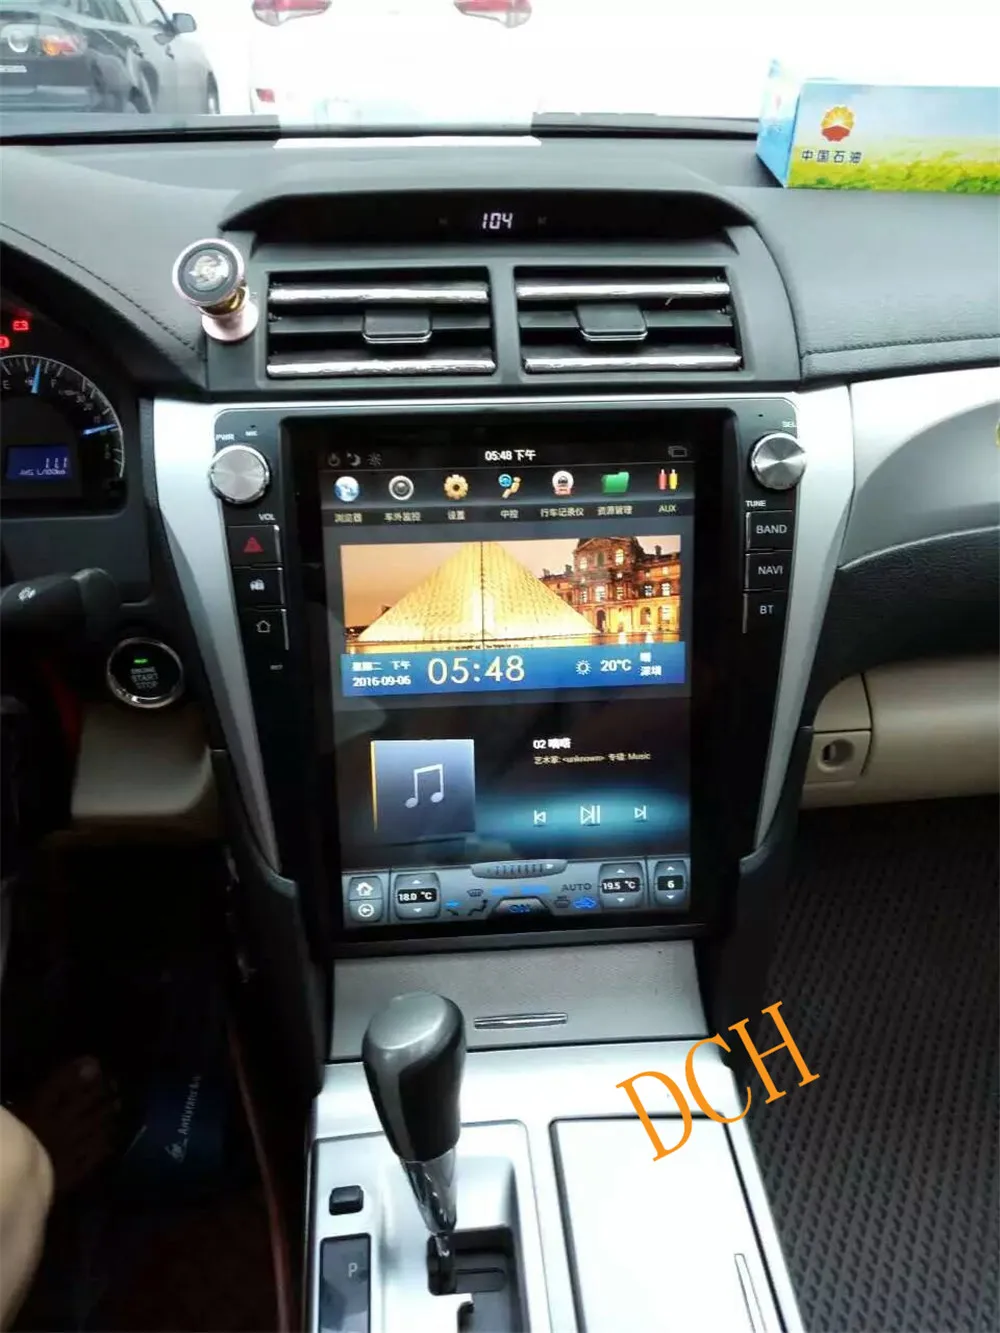 12,1 дюймов вертикальный tesla стиль Android 8,1 автомобильный dvd-плеер gps навигация радио авто для Toyota Camry 2012- PX6 CARPLAY ips